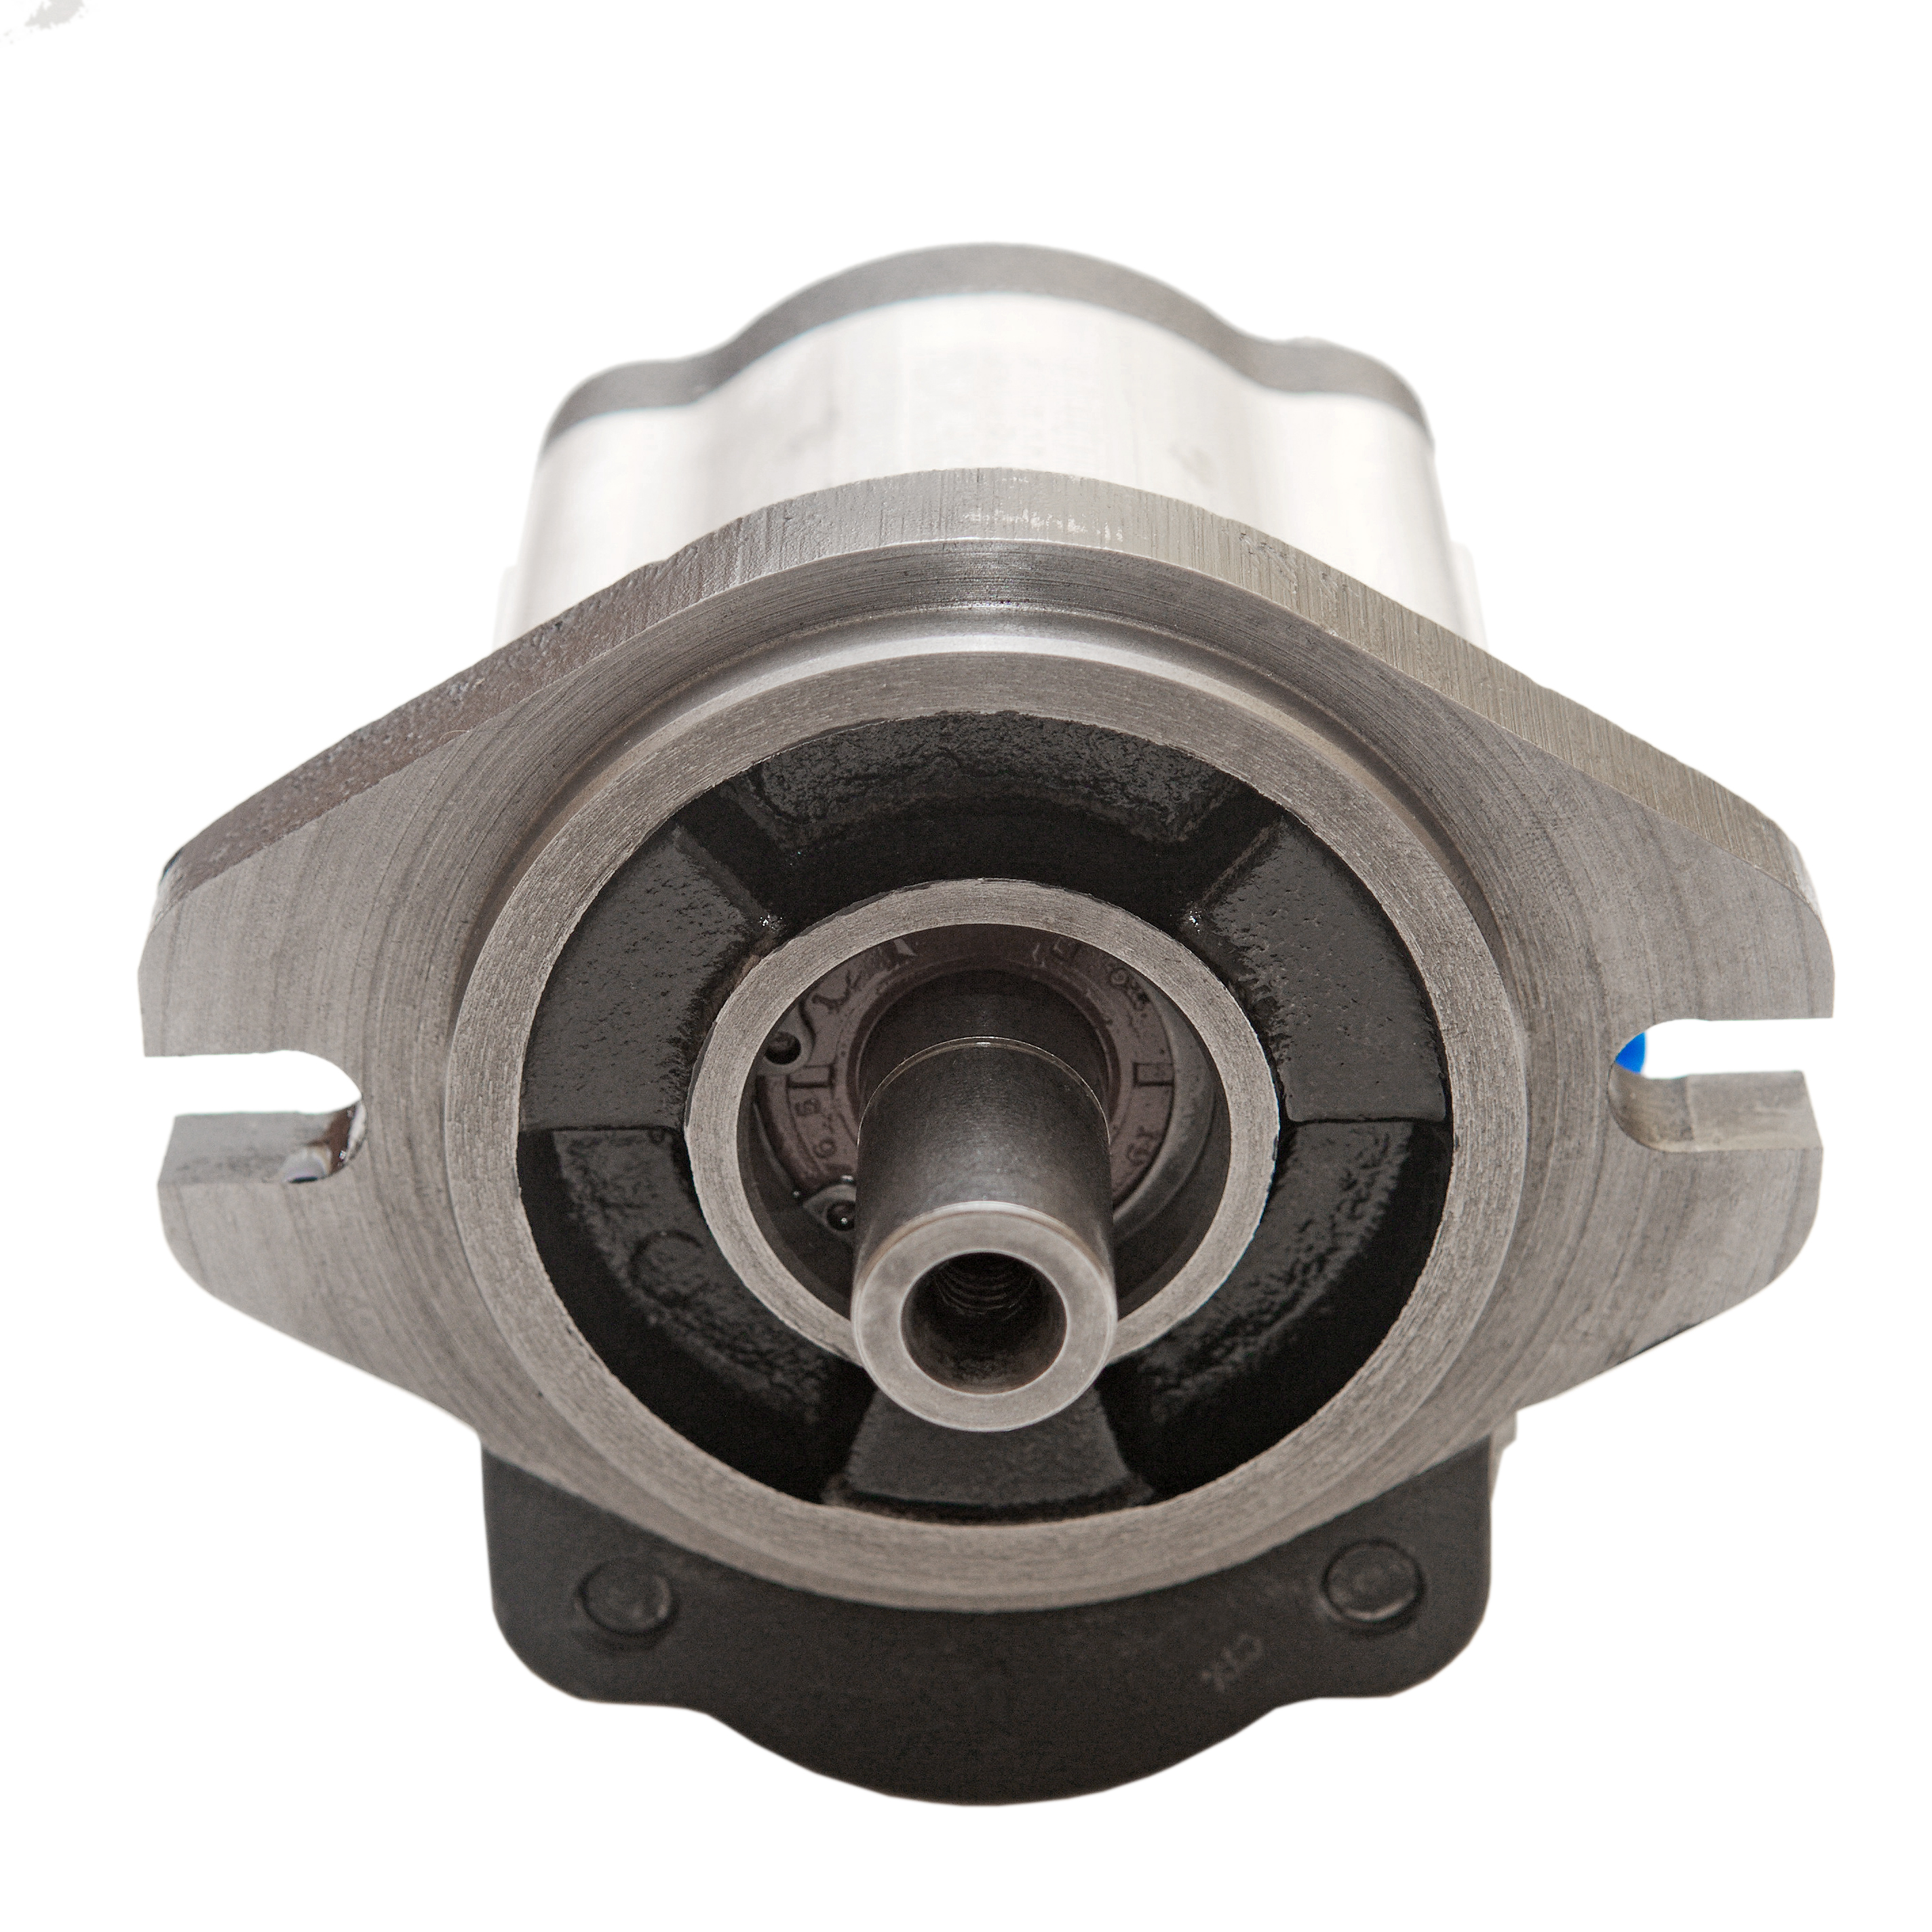 0.61 CID hydraulic gear pump, 5/8 keyed shaft counter-clockwise gear pump | Magister Hydraulics